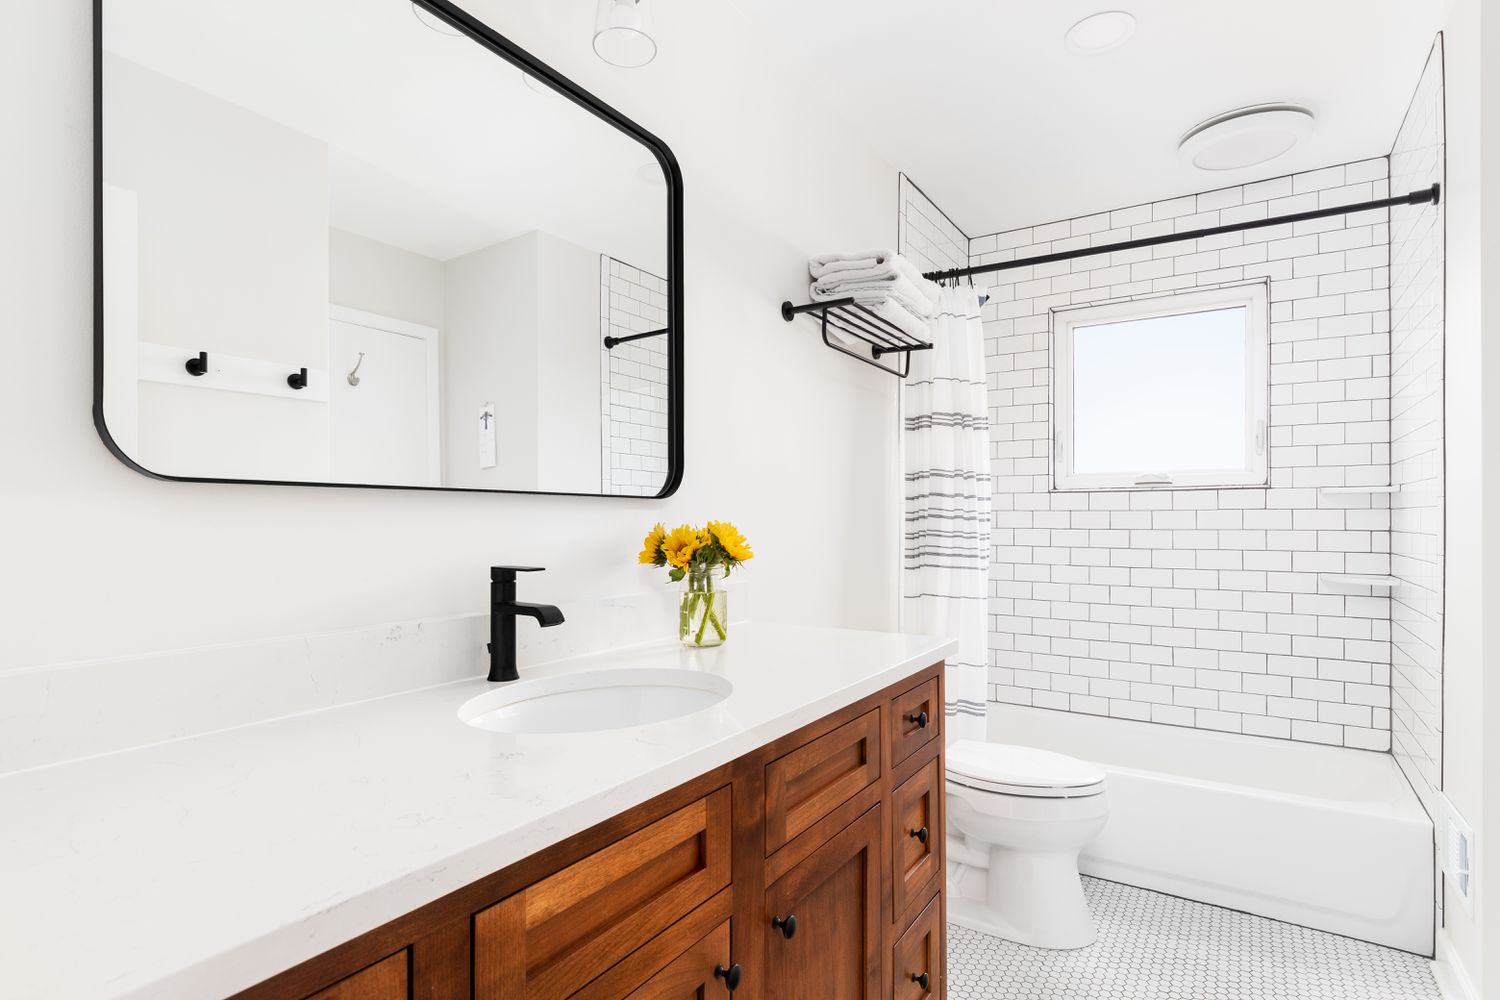 Une salle de bain avec du carrelage blanc et des joints noirs